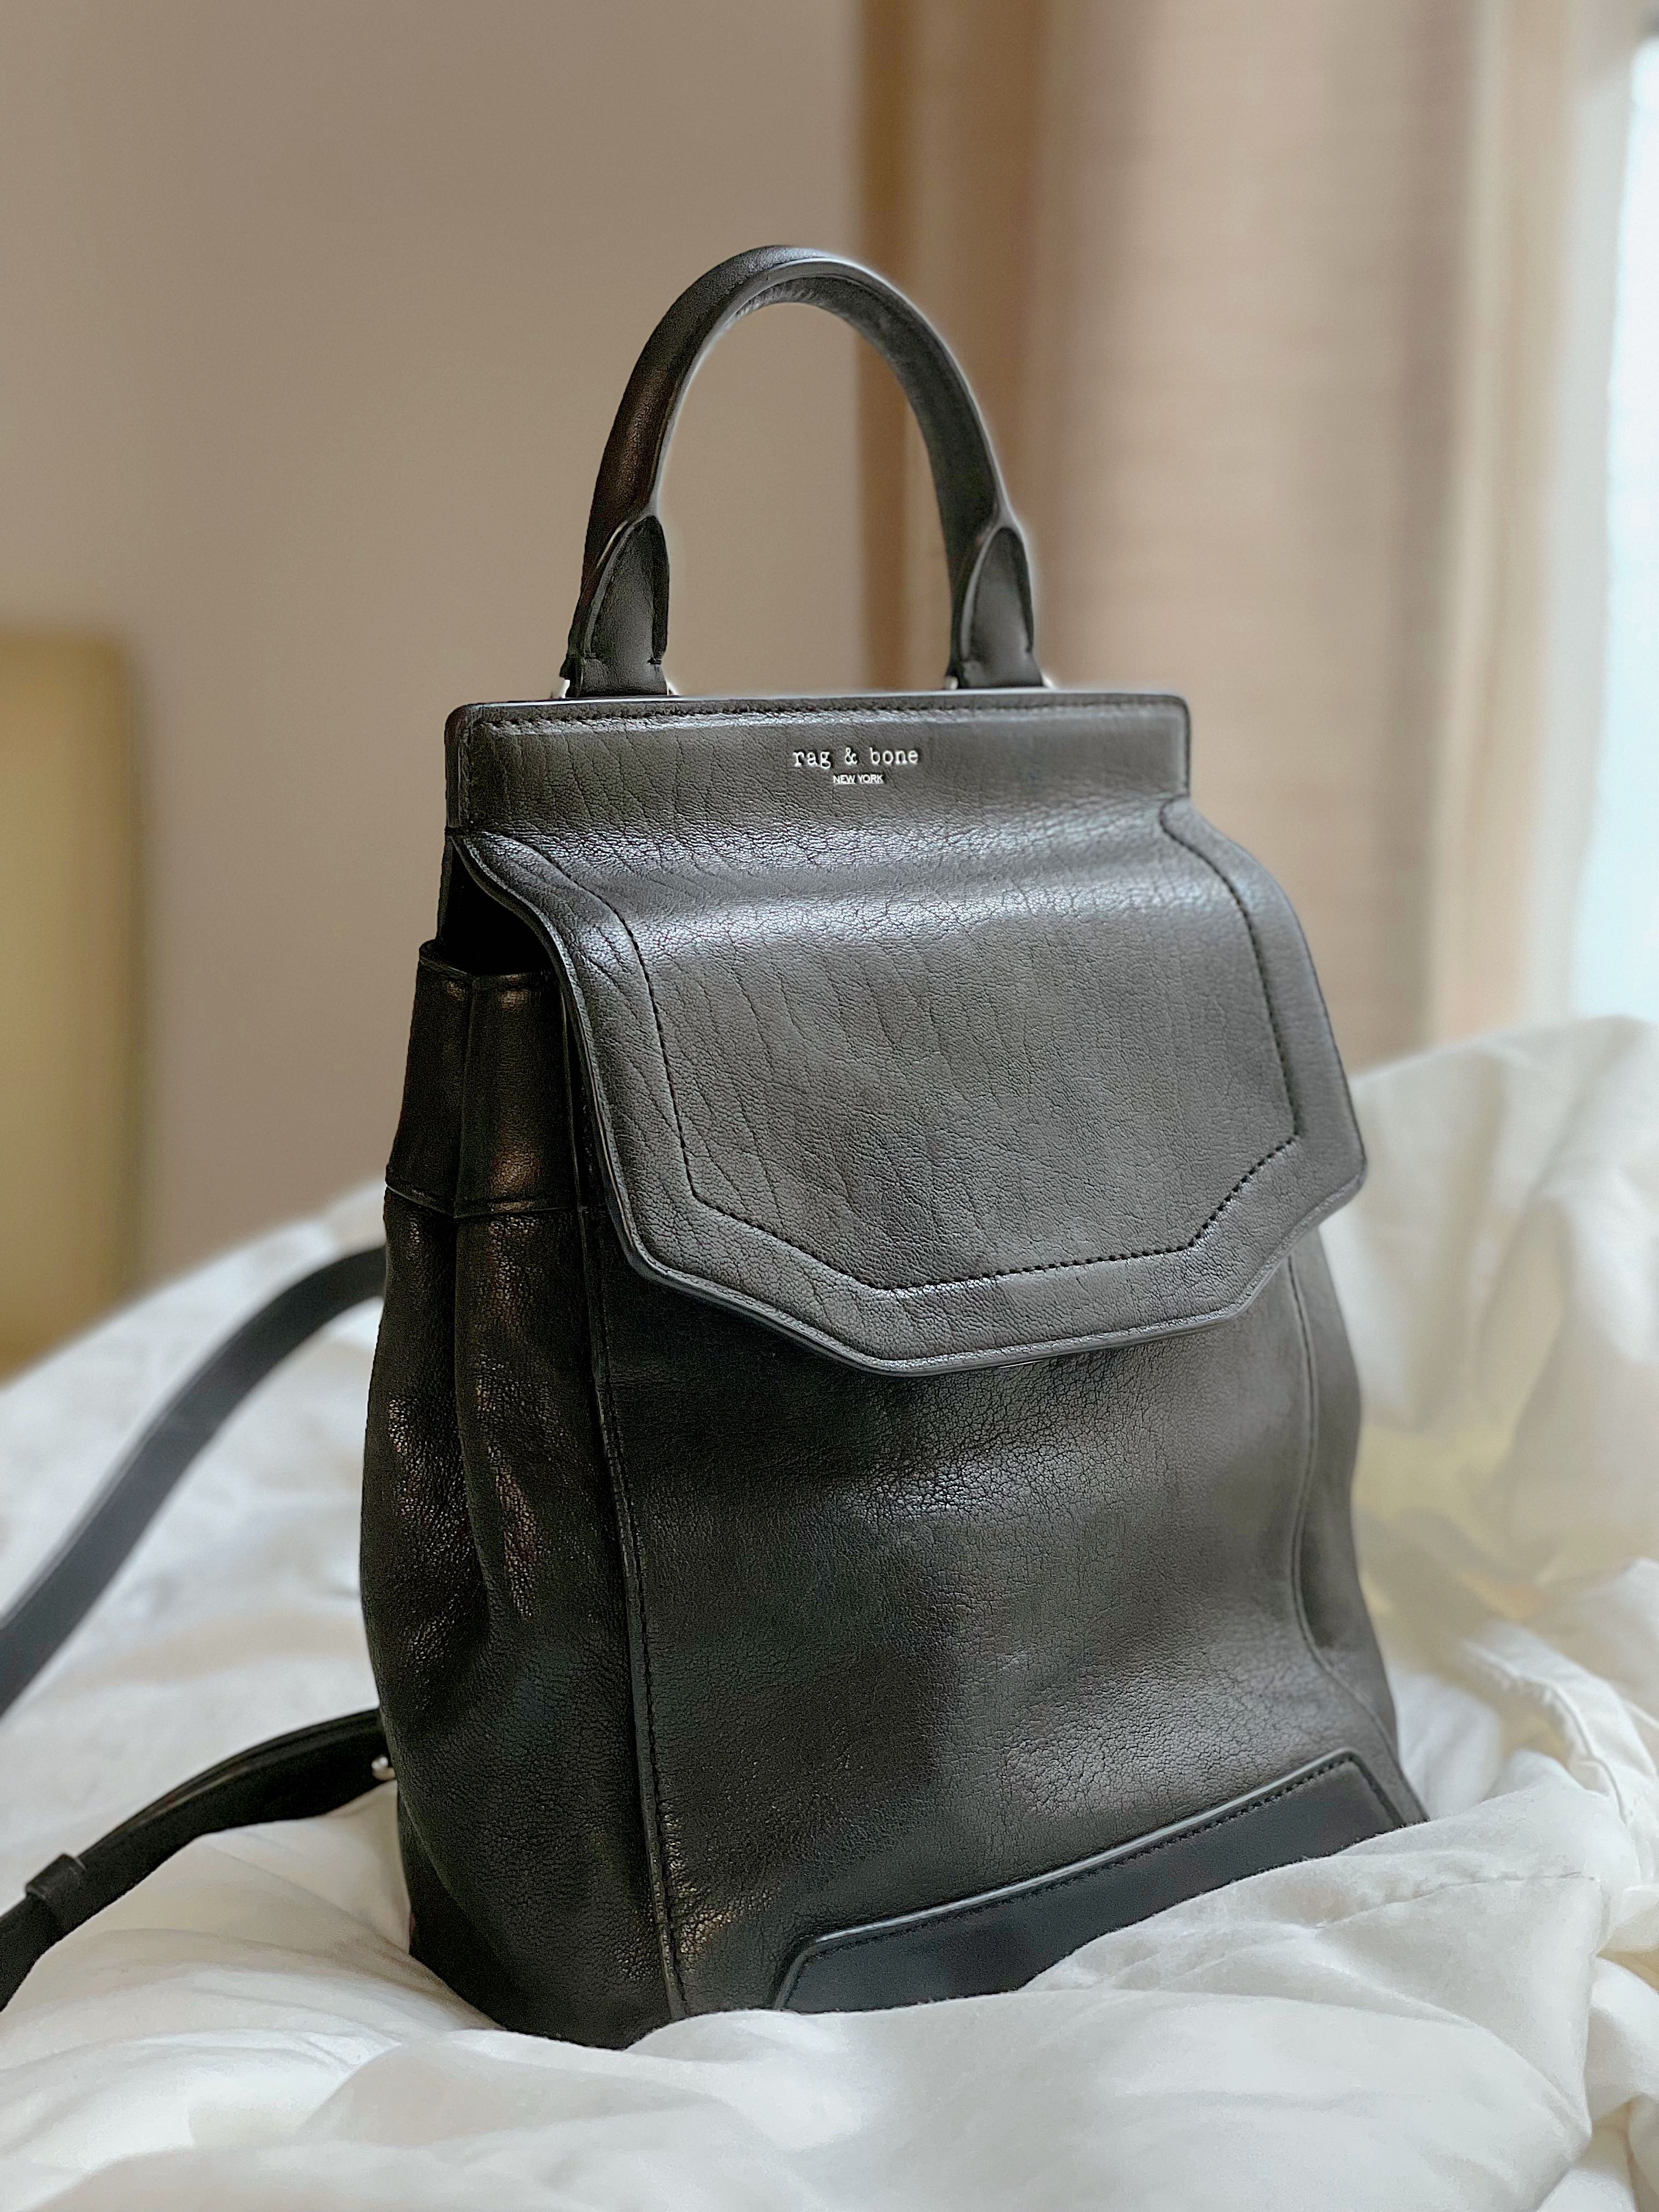 Handbags-New Arrivals – GordonStuart.com